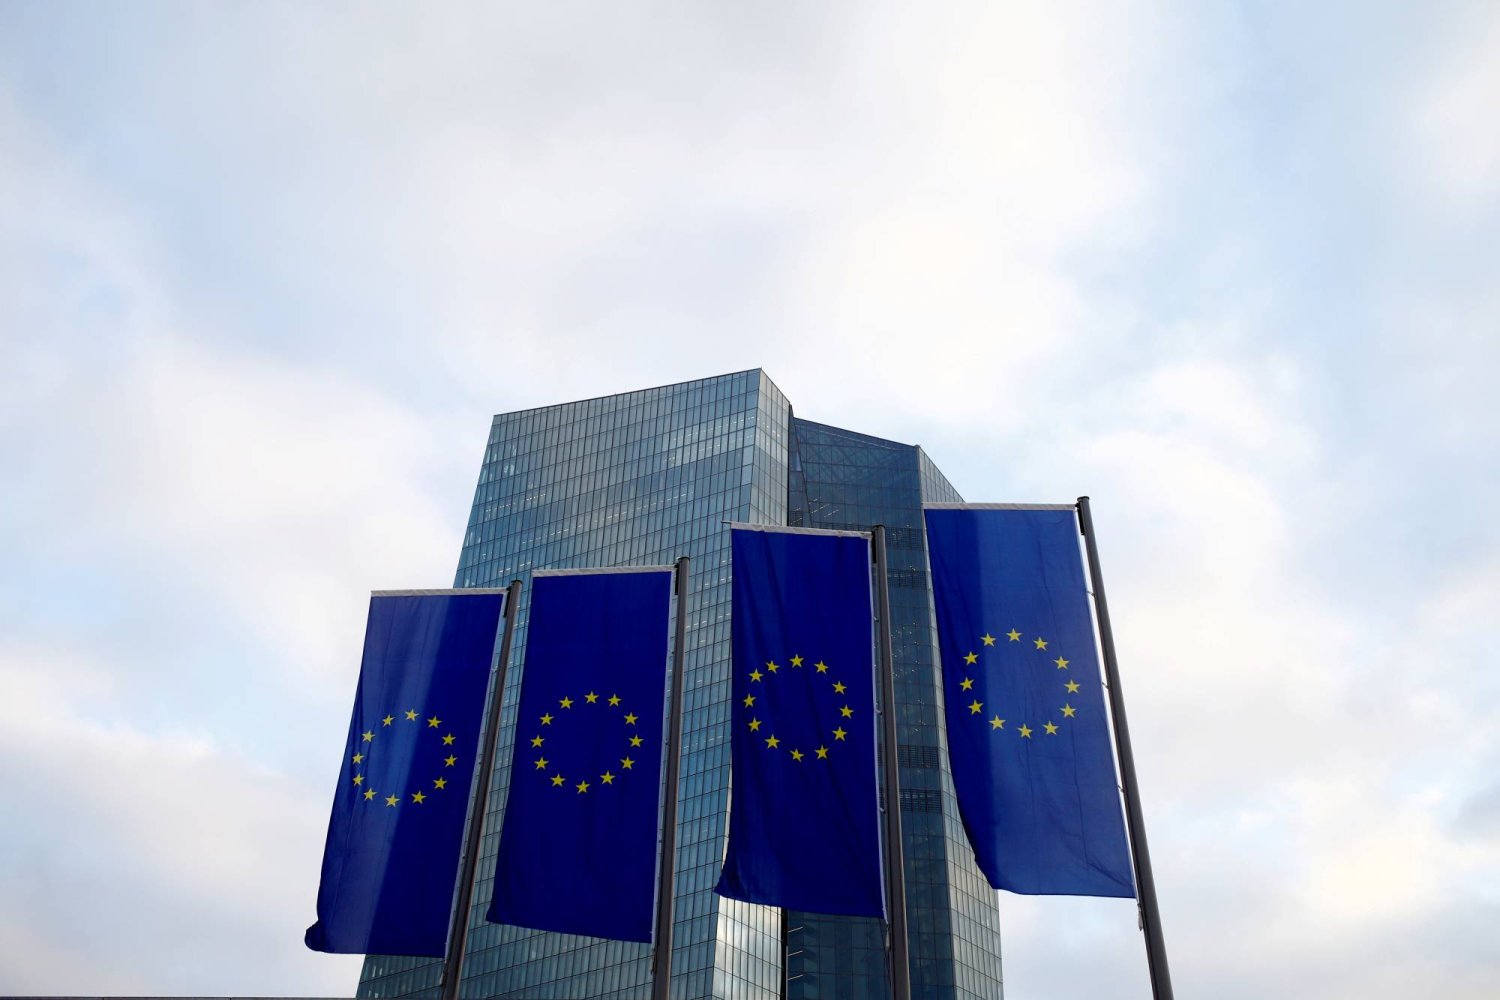 أعلام الاتحاد الأوروبي ترفرف أمام مقر المصرف المركزي الأوروبي في فرنكفورت - ألمانيا (رويترز)